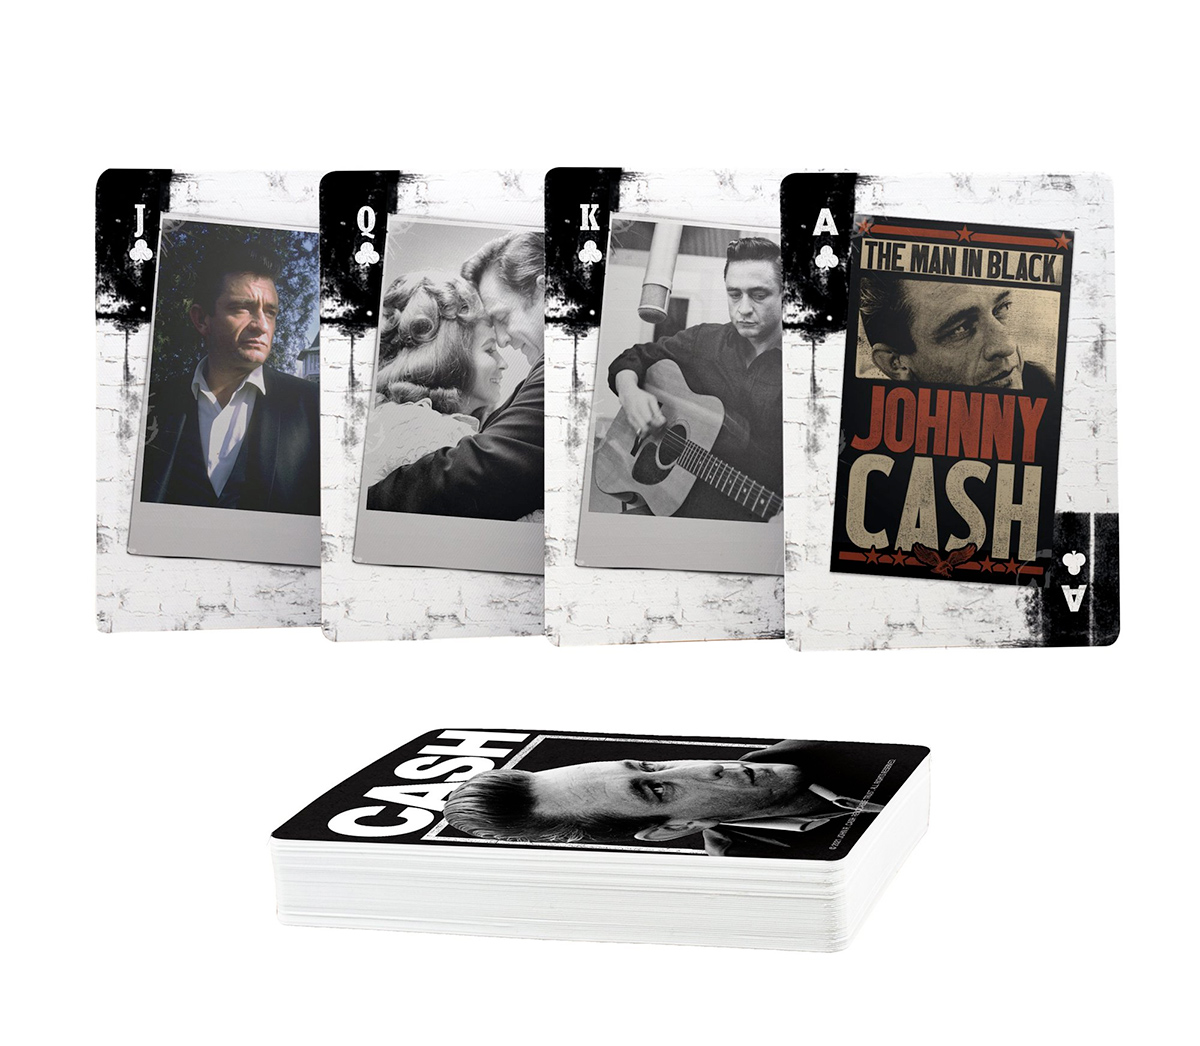 Baralho Johnny Cash, o Homem de Preto